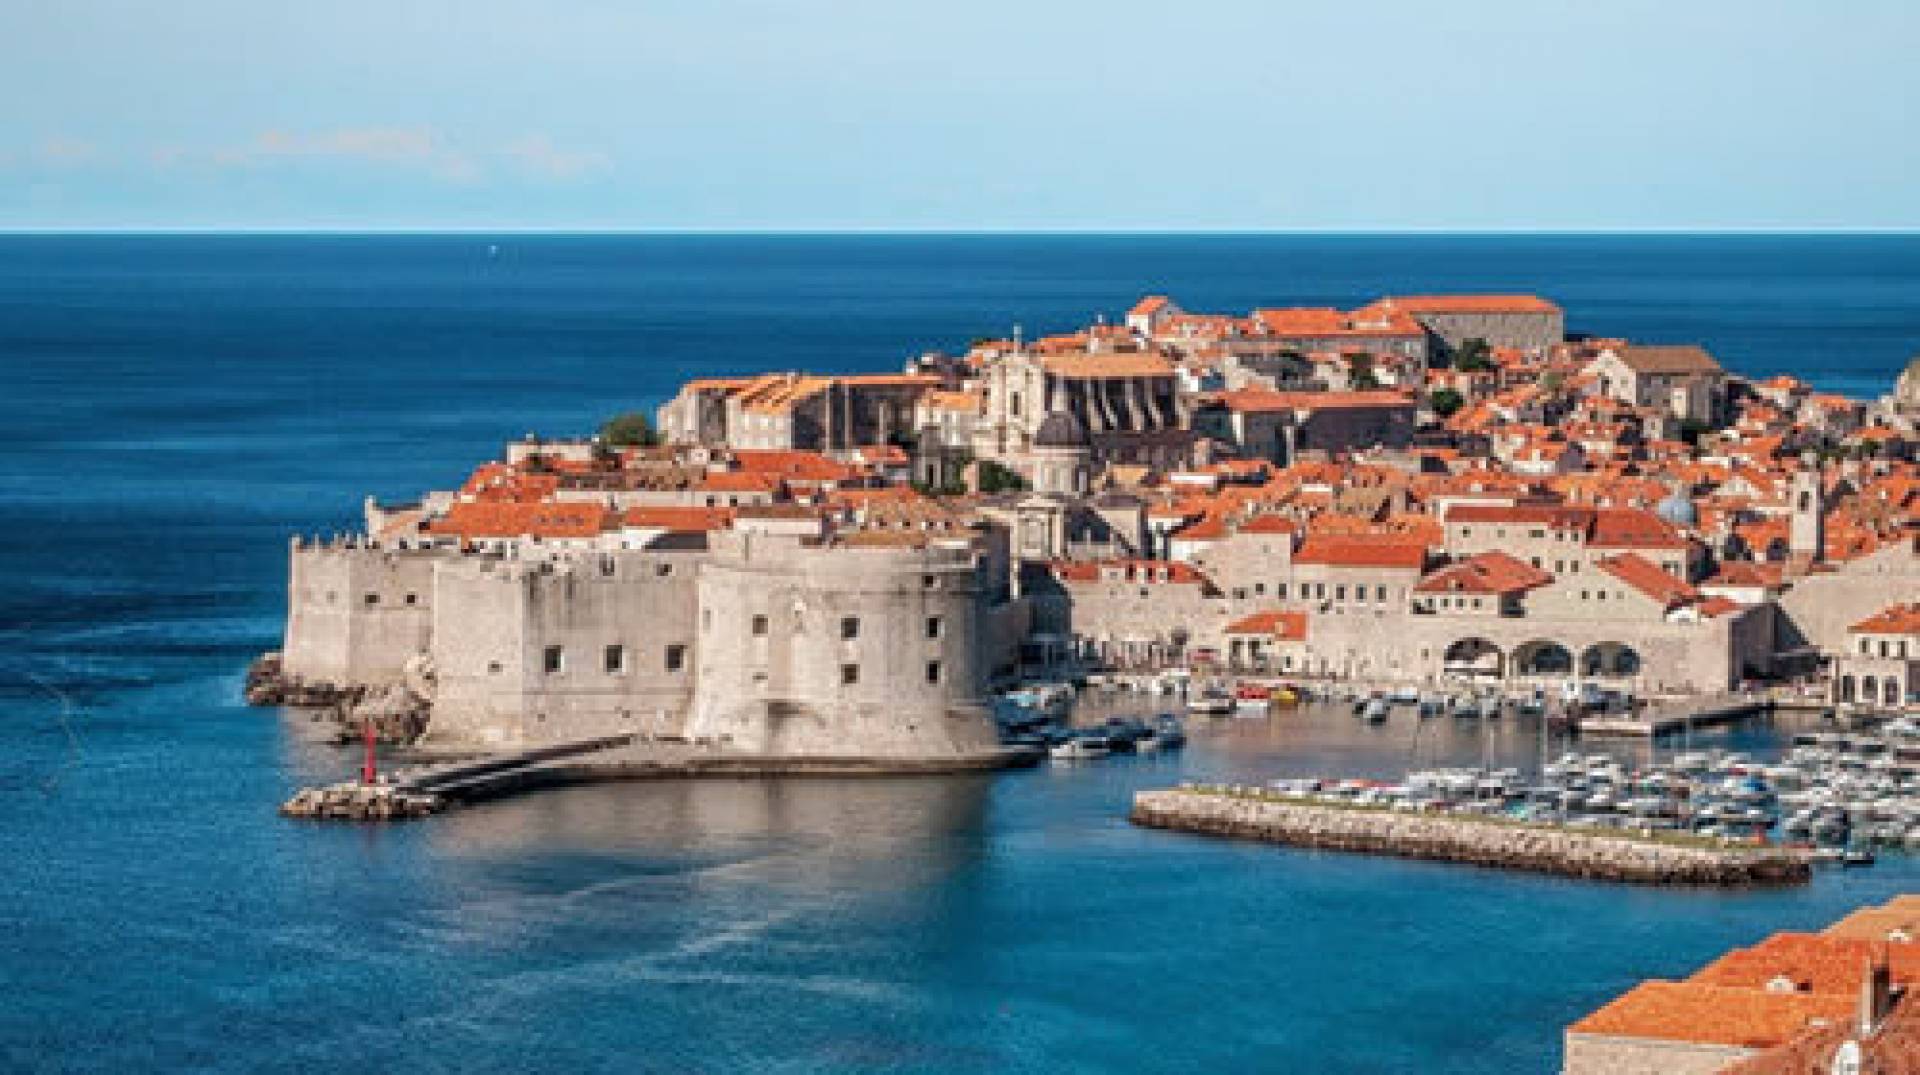 Why visit Dubrovnik